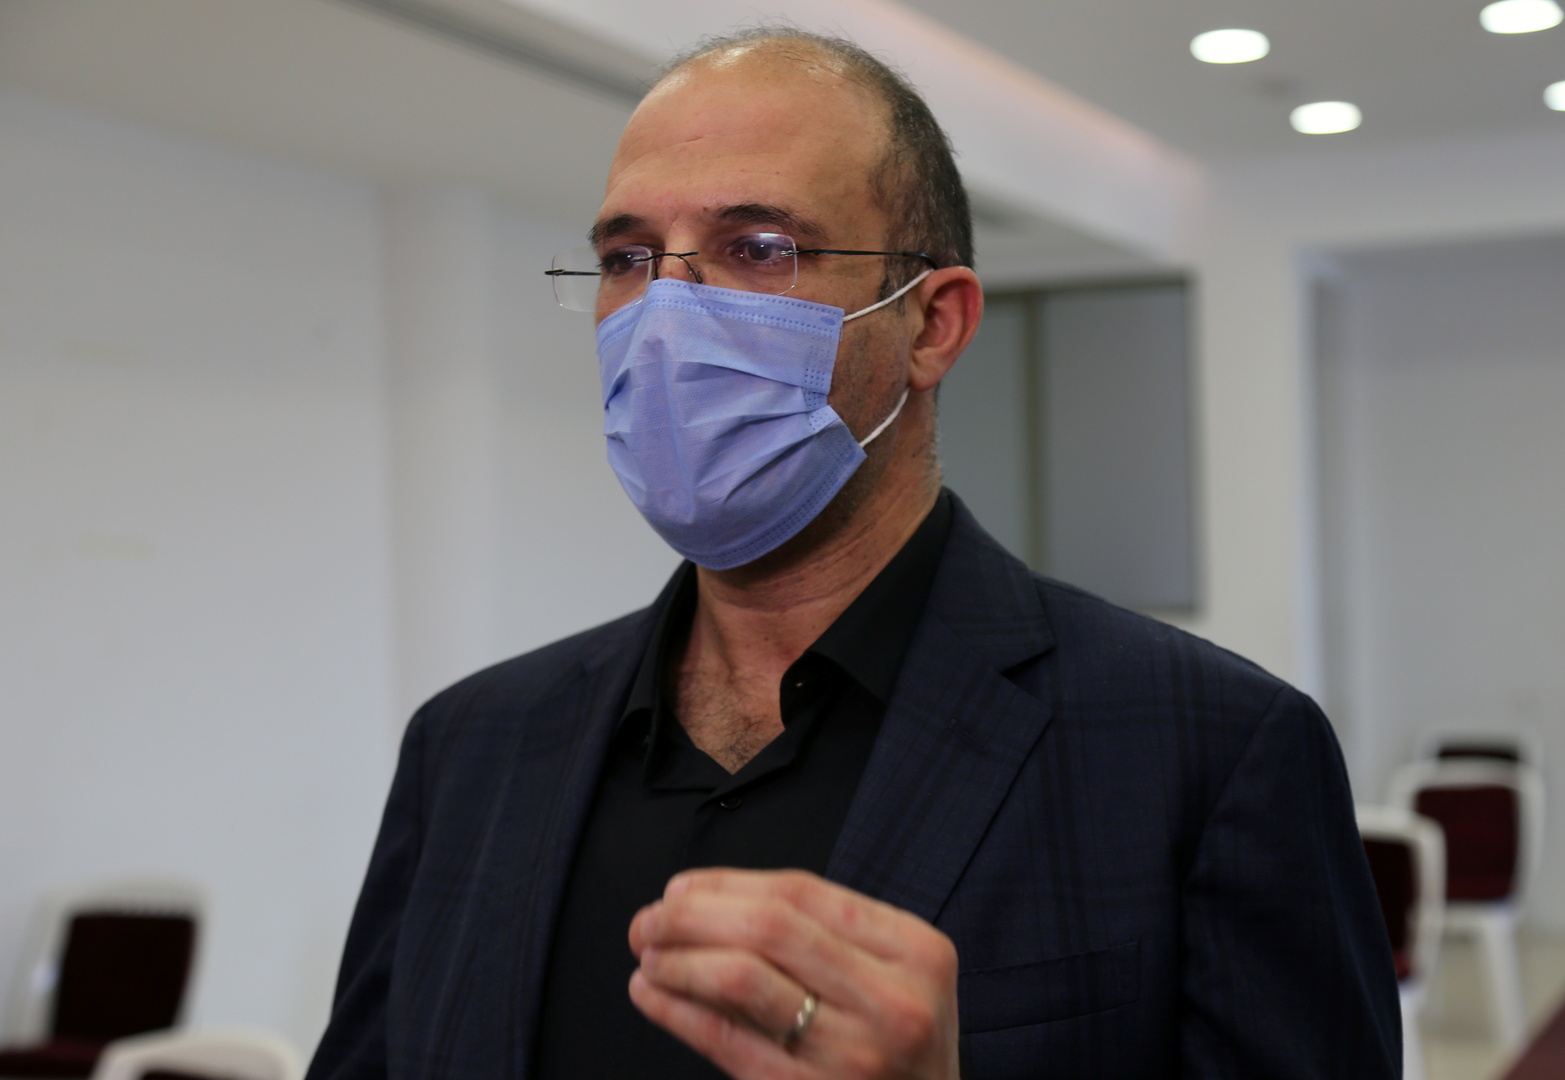 إصابة وزير الصحة اللبناني بفيروس كورونا